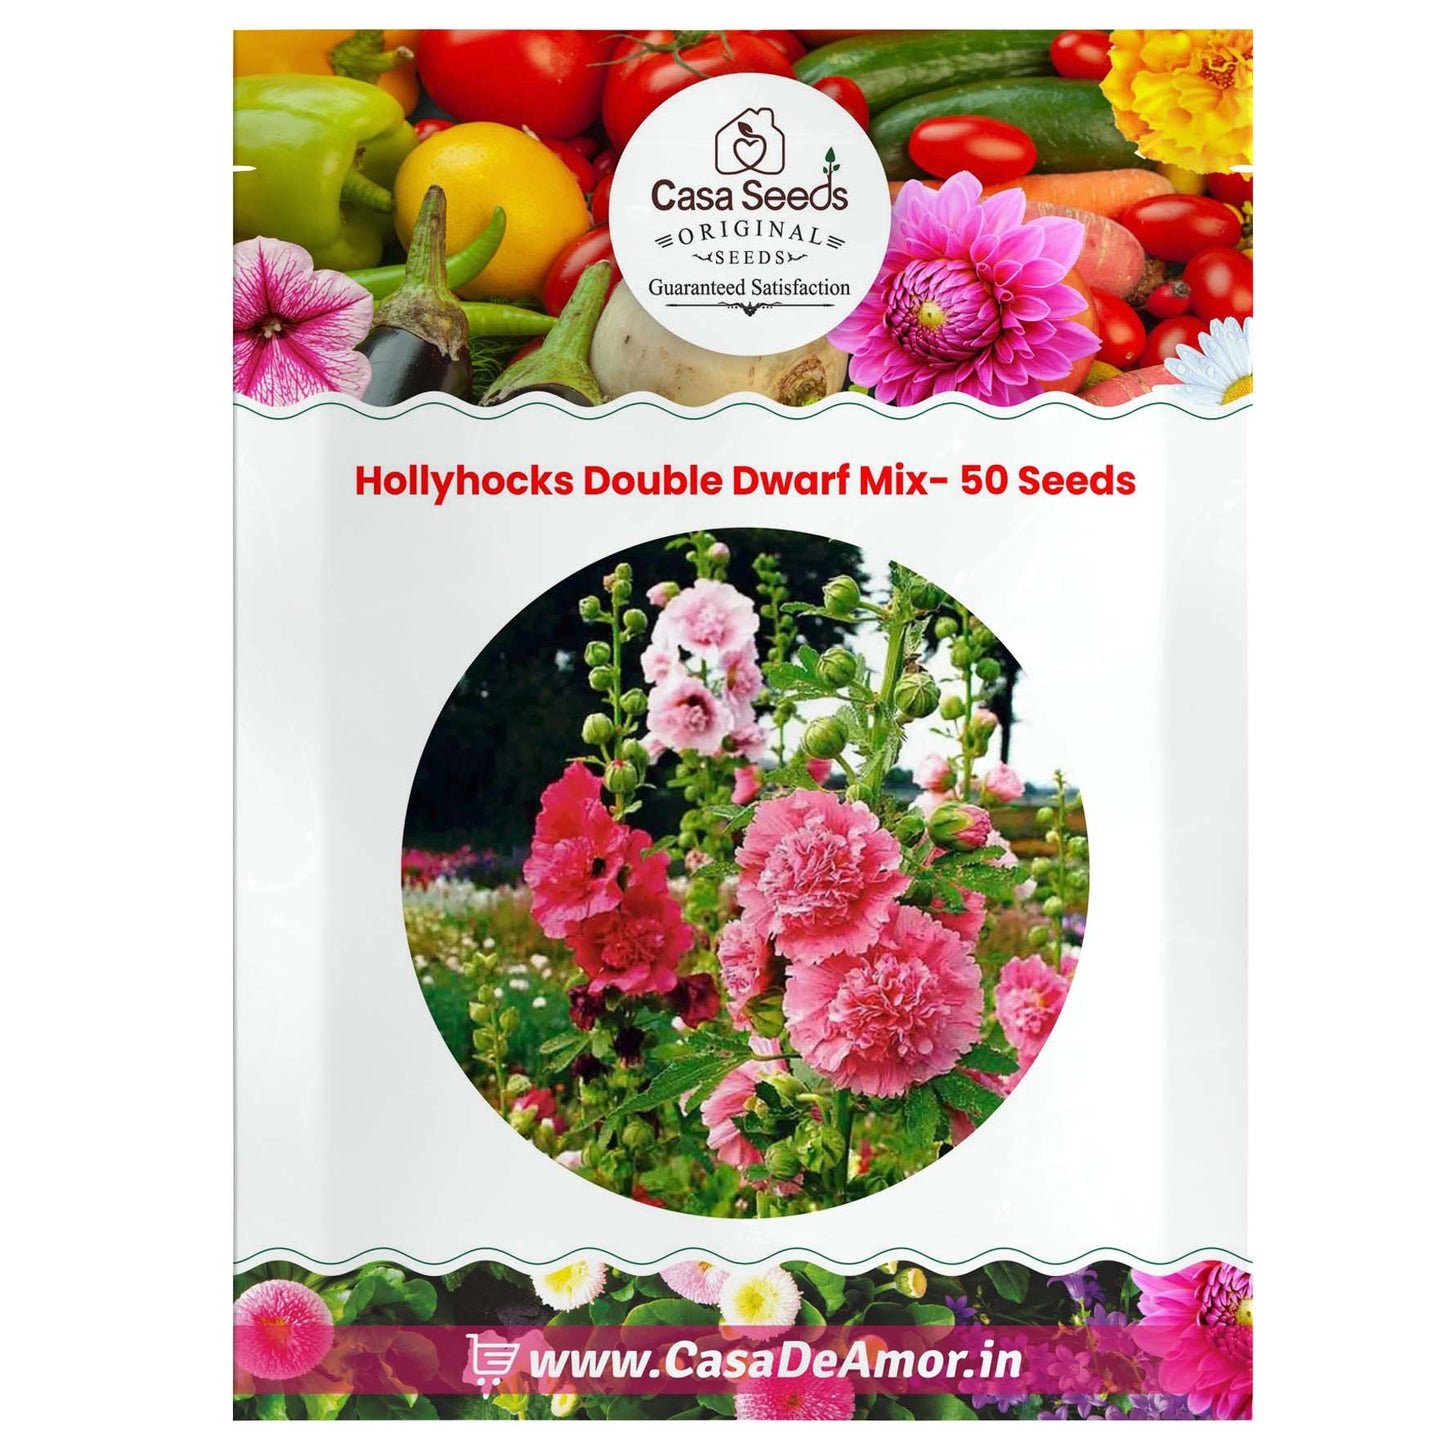 Hollyhocks Double Dwarf Mix- 50 Seeds